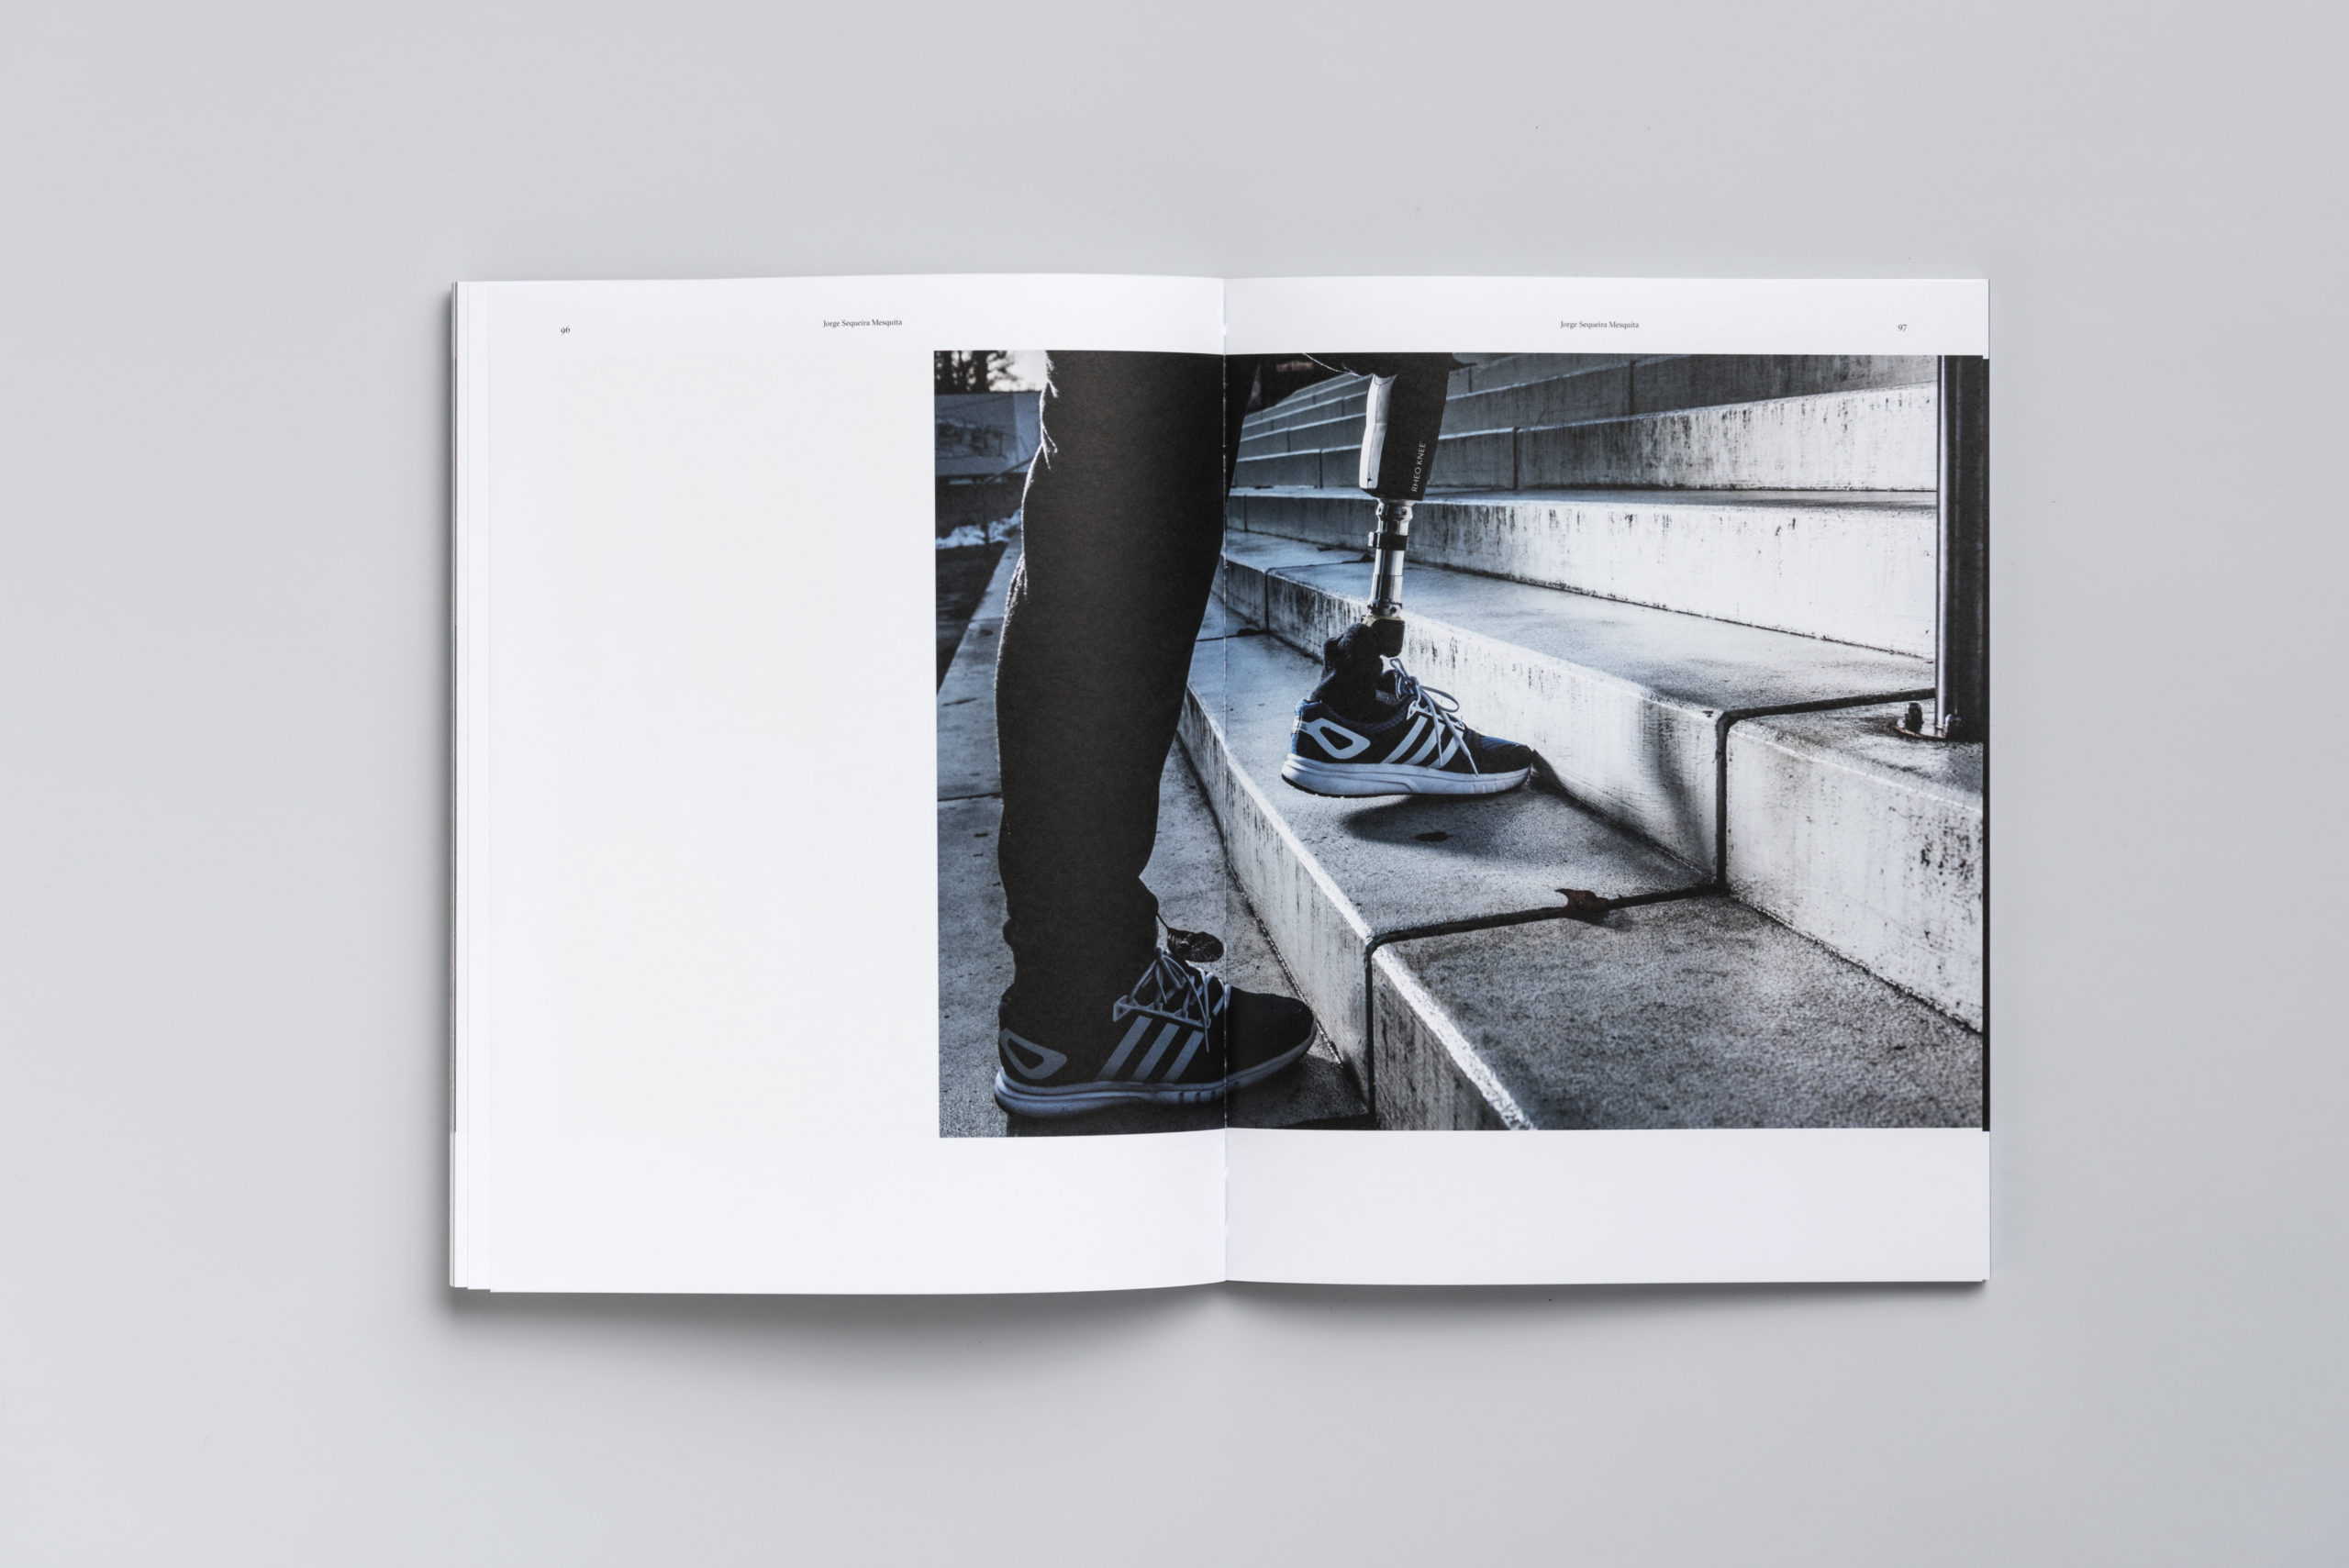 Double page du livre d'arrache-pied. On y voit une image en double page, avec une personne qui monte des escaliers. Son pied droit est une prothèse.